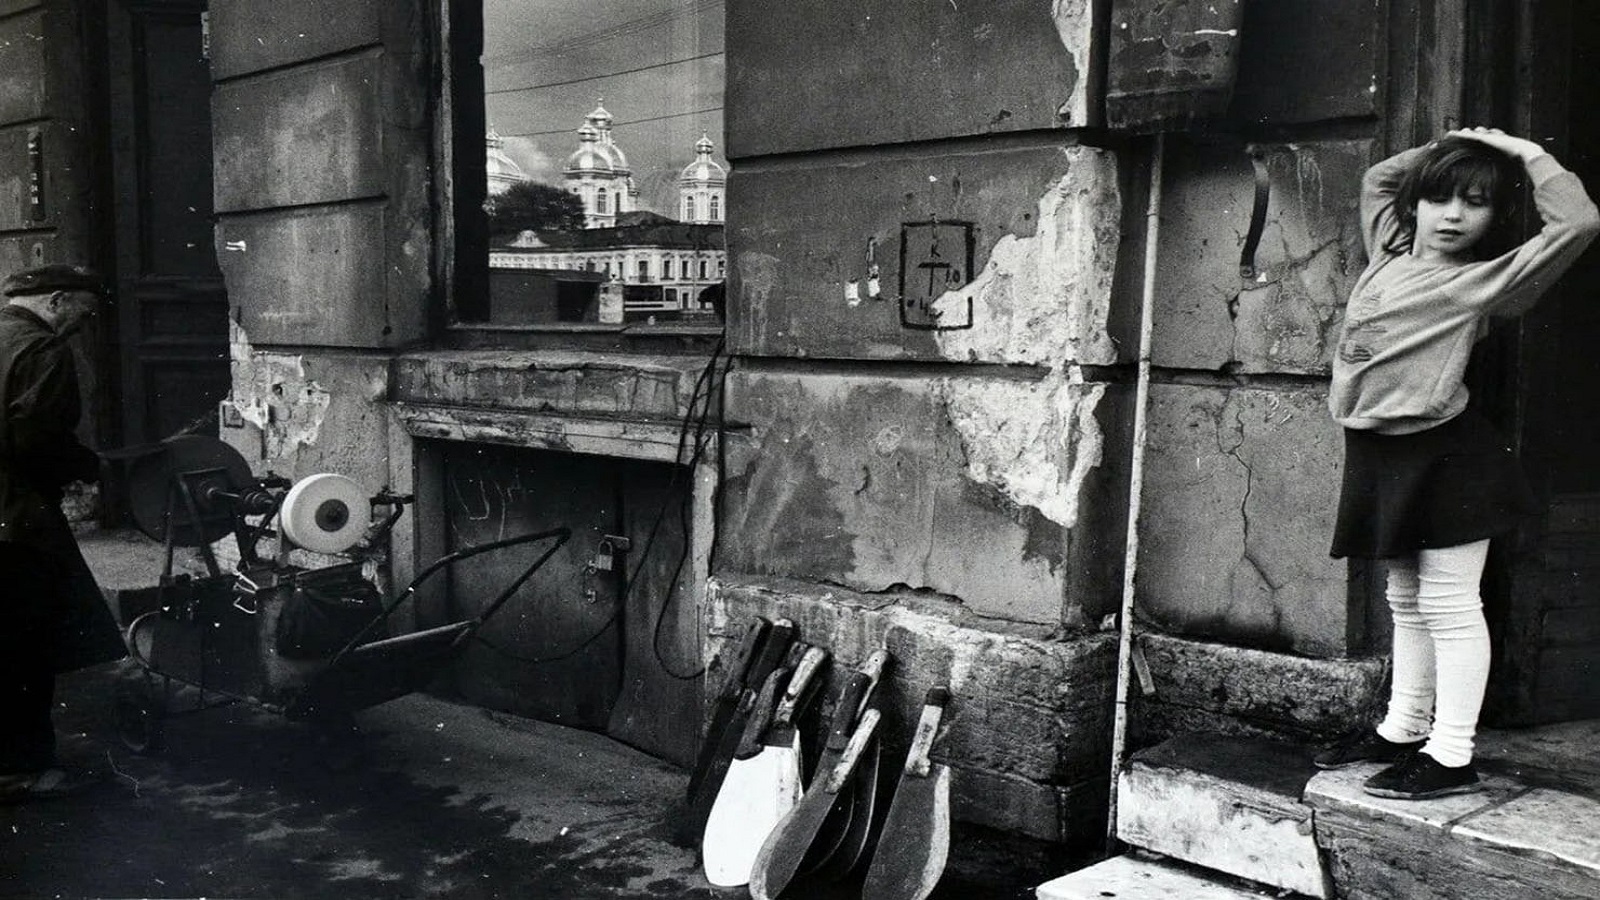 الفوتوغرافي بوريس سميلوف...الصورة السوفياتية المُهرّبة إلى "معارض الشقق"